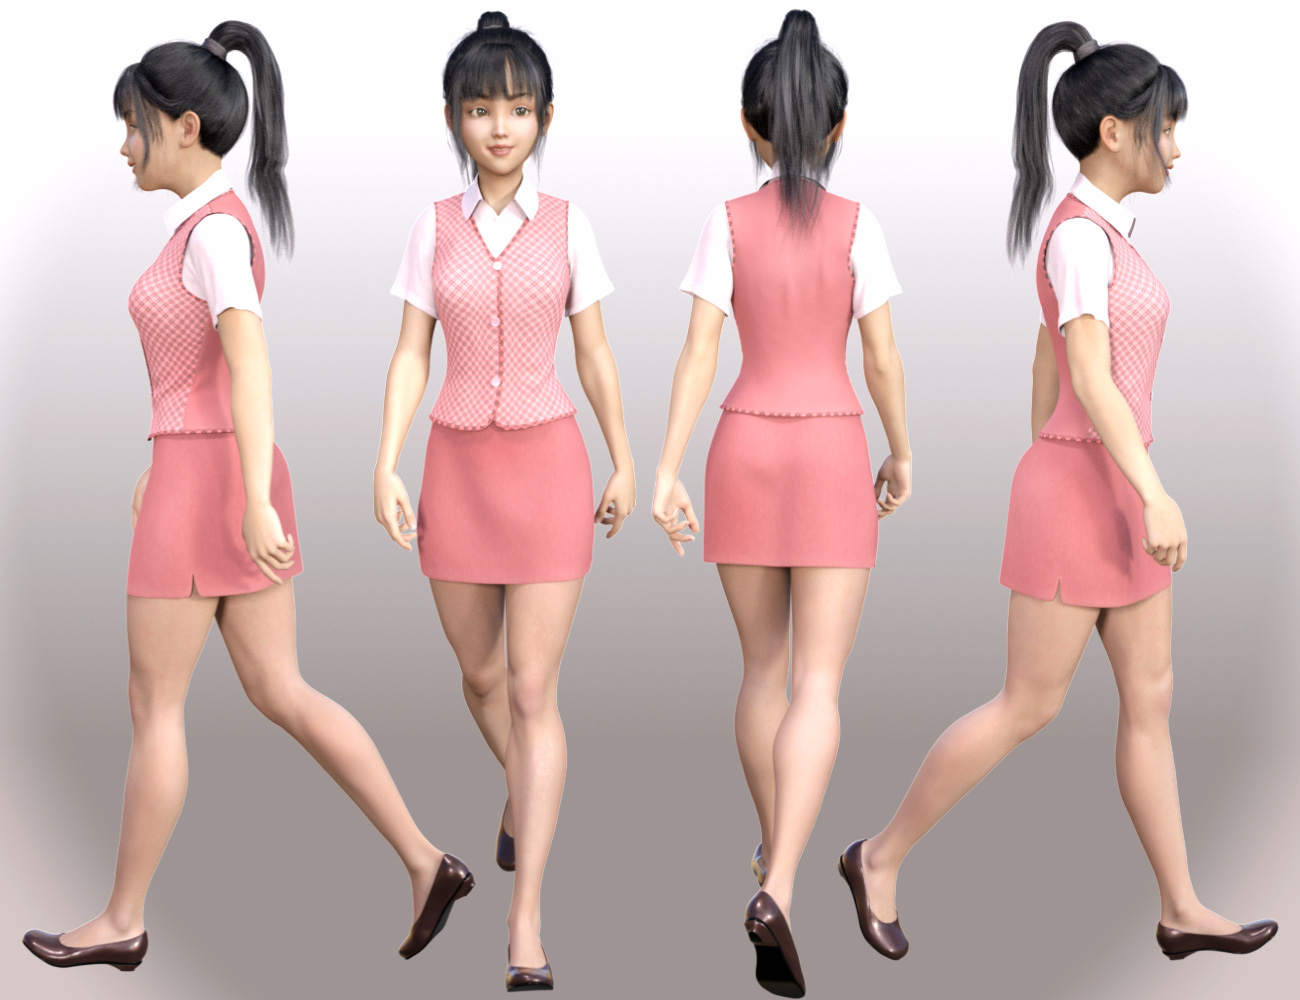 dForce Clerk Outfit for Genesis 8 Females by: tentman, 3D Models by Daz 3D